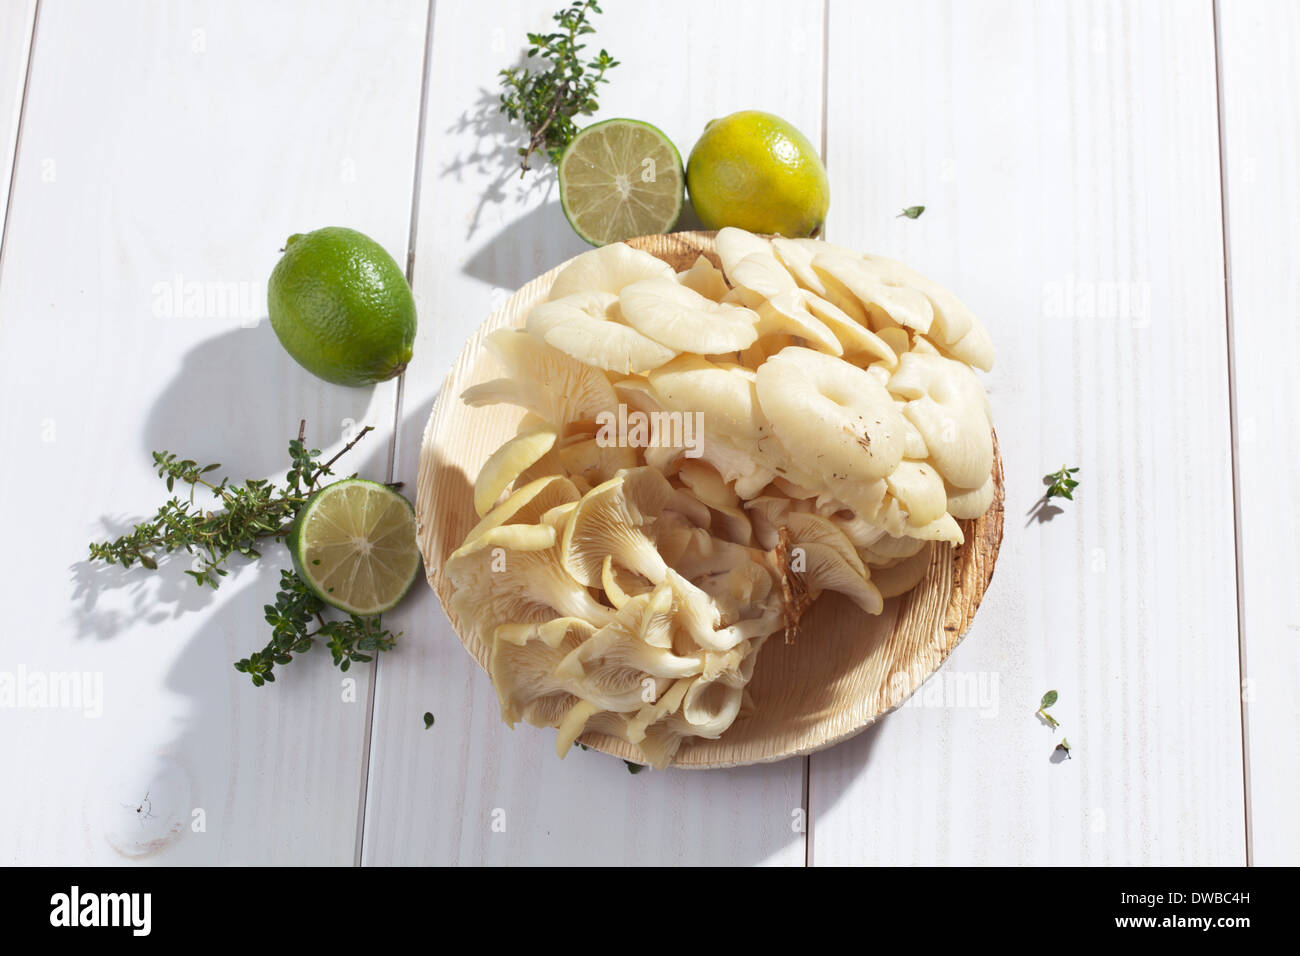 Golden pleurotes (Pleurotus citrinopileatus), limes, et thym-citron sur table en bois Banque D'Images